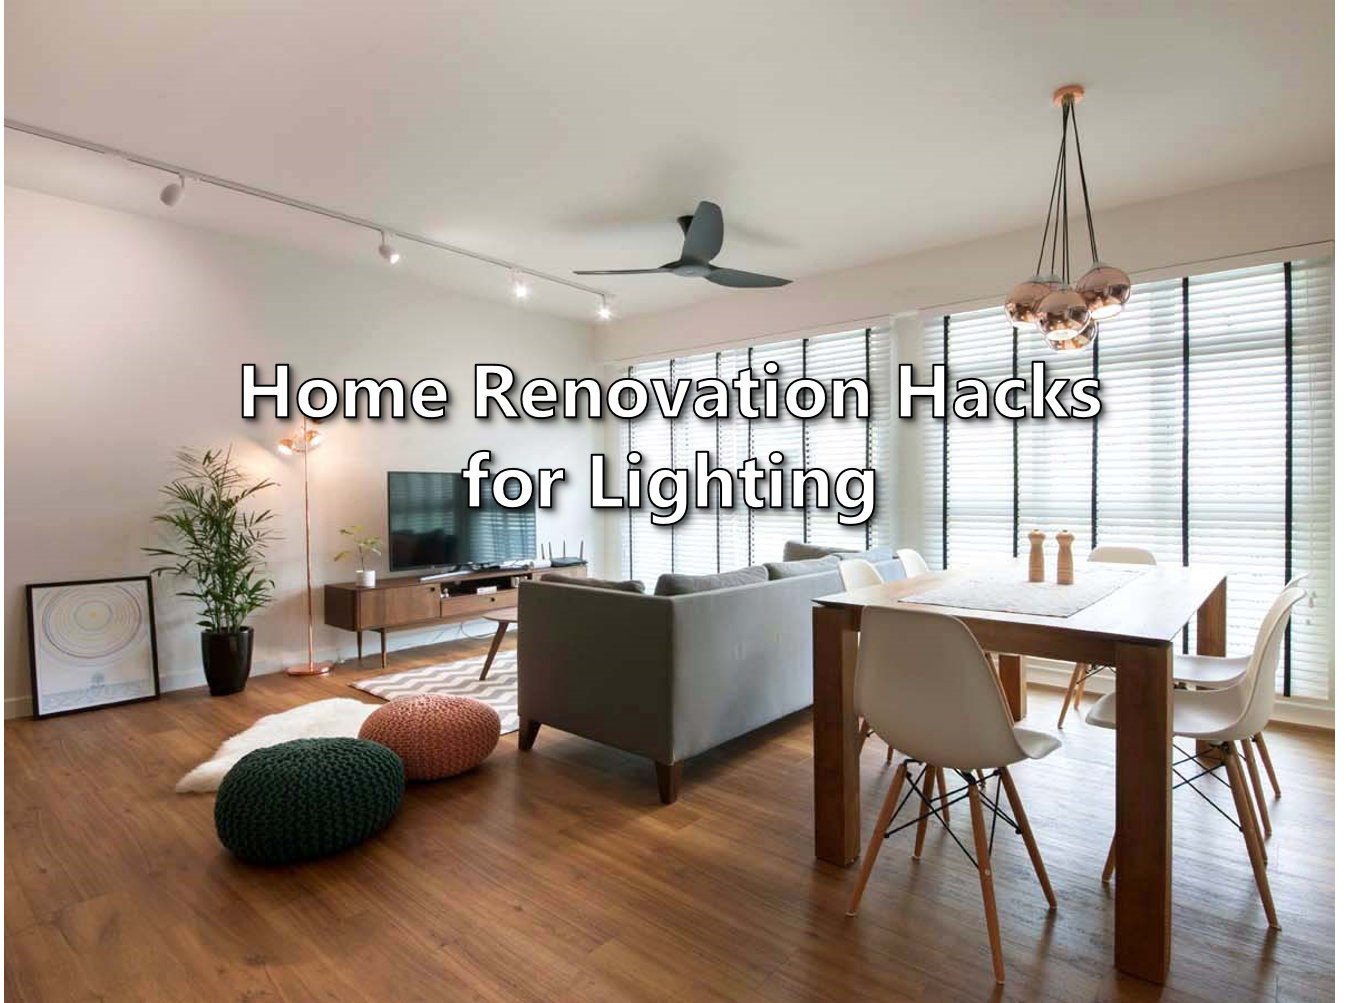 Home Renovation Hacks for Lighting